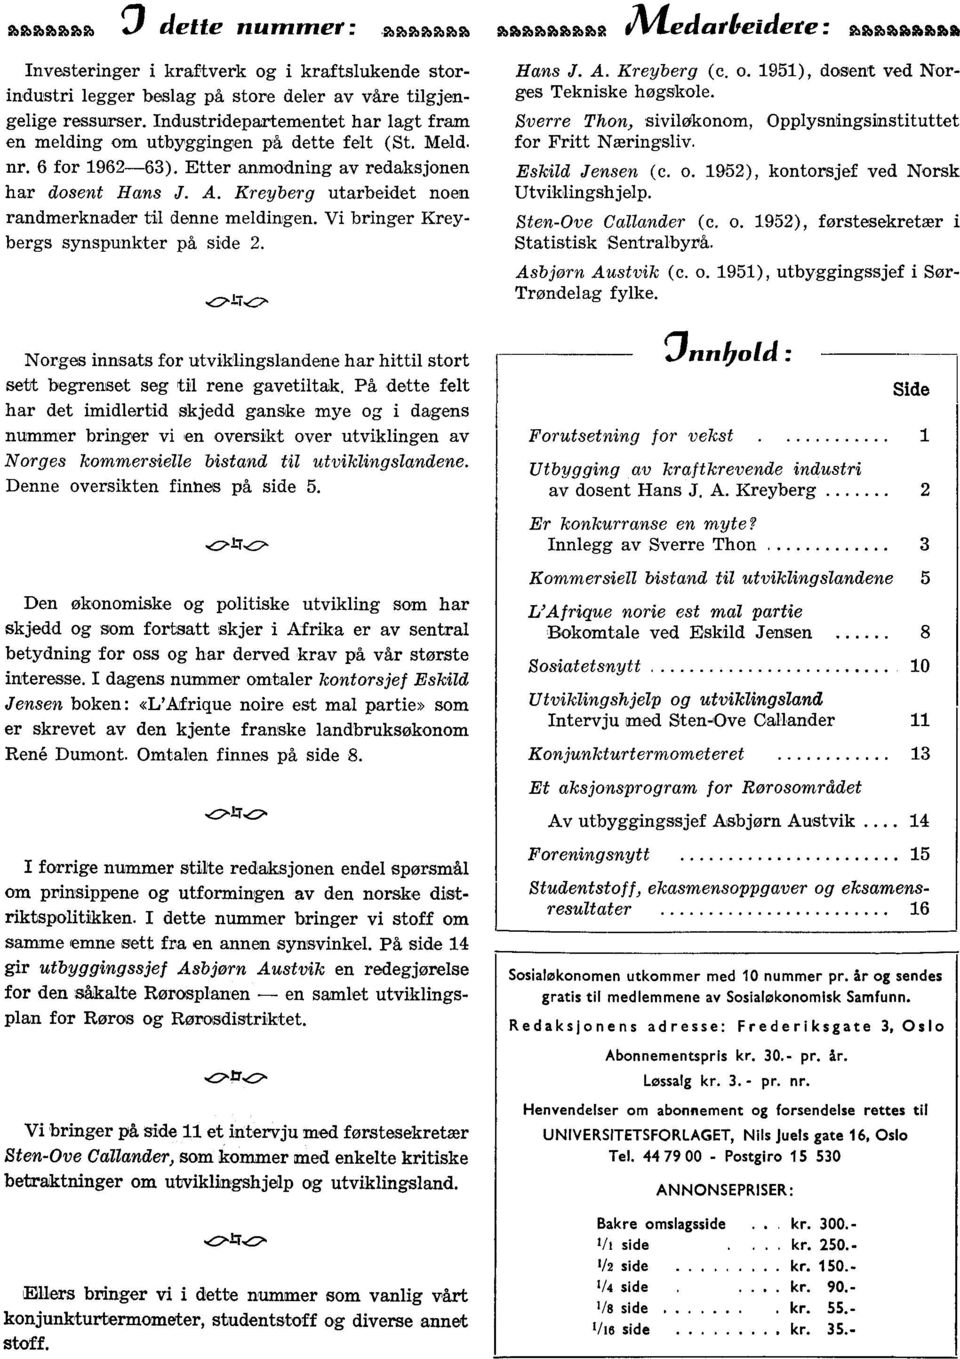 Kreyberg utarbeidet noen randmerknader til denne meldingen. Vi bringer Kreybergs synspunkter på side 2. Hans J. A. Kreyberg (c. o. 1951), dosent ved Norges Tekniske høgskole.